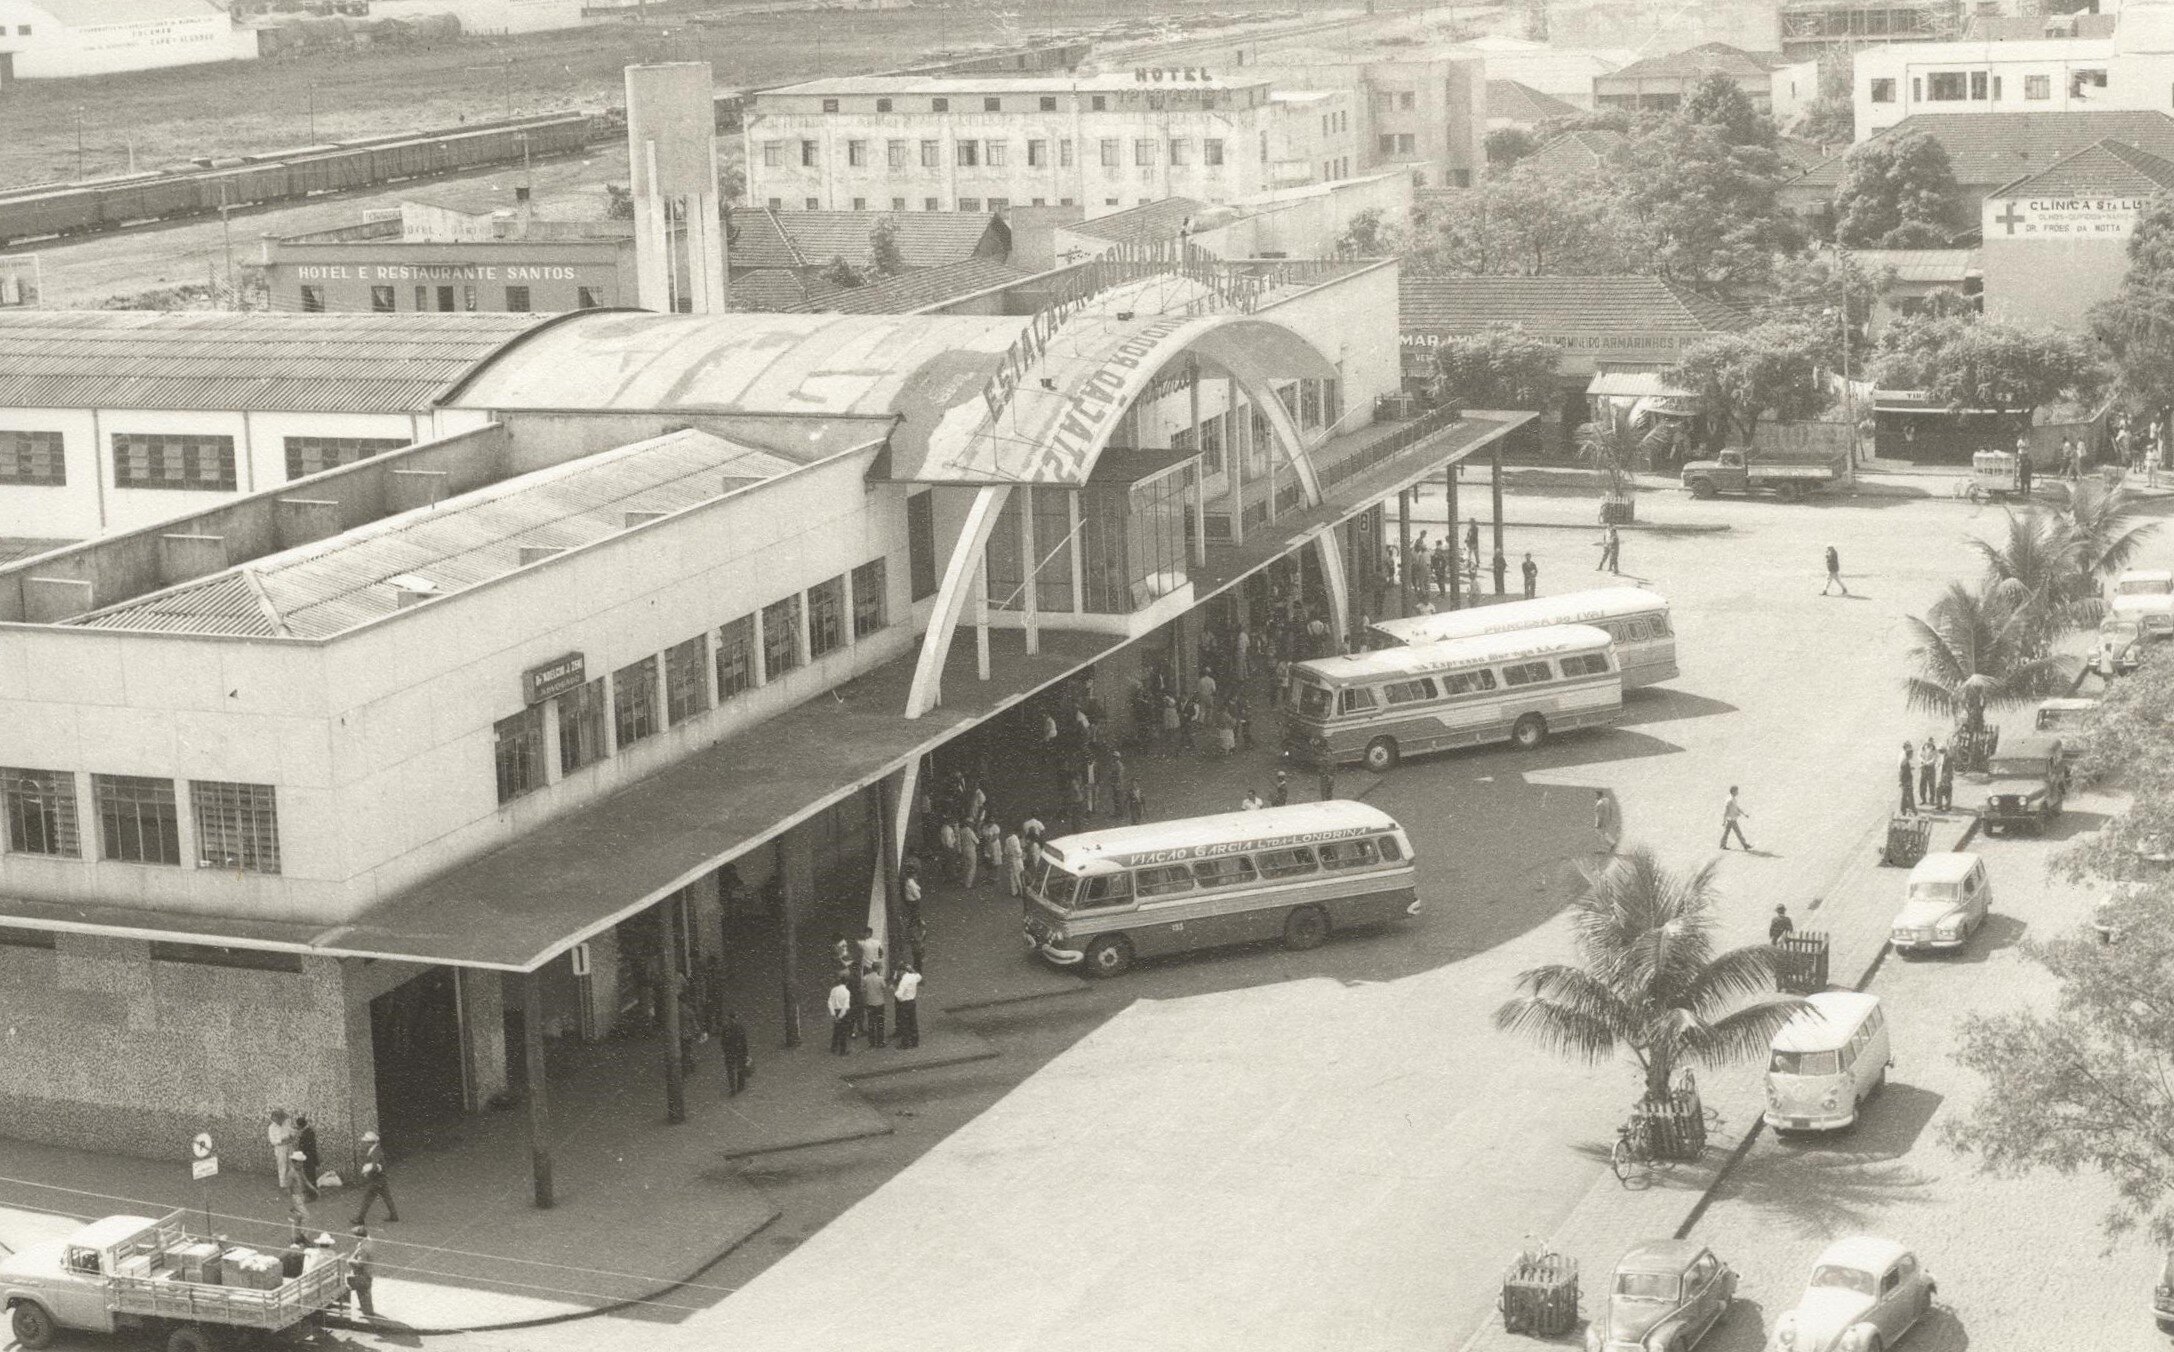 Estação Rodoviária Municipal - Década de 1960